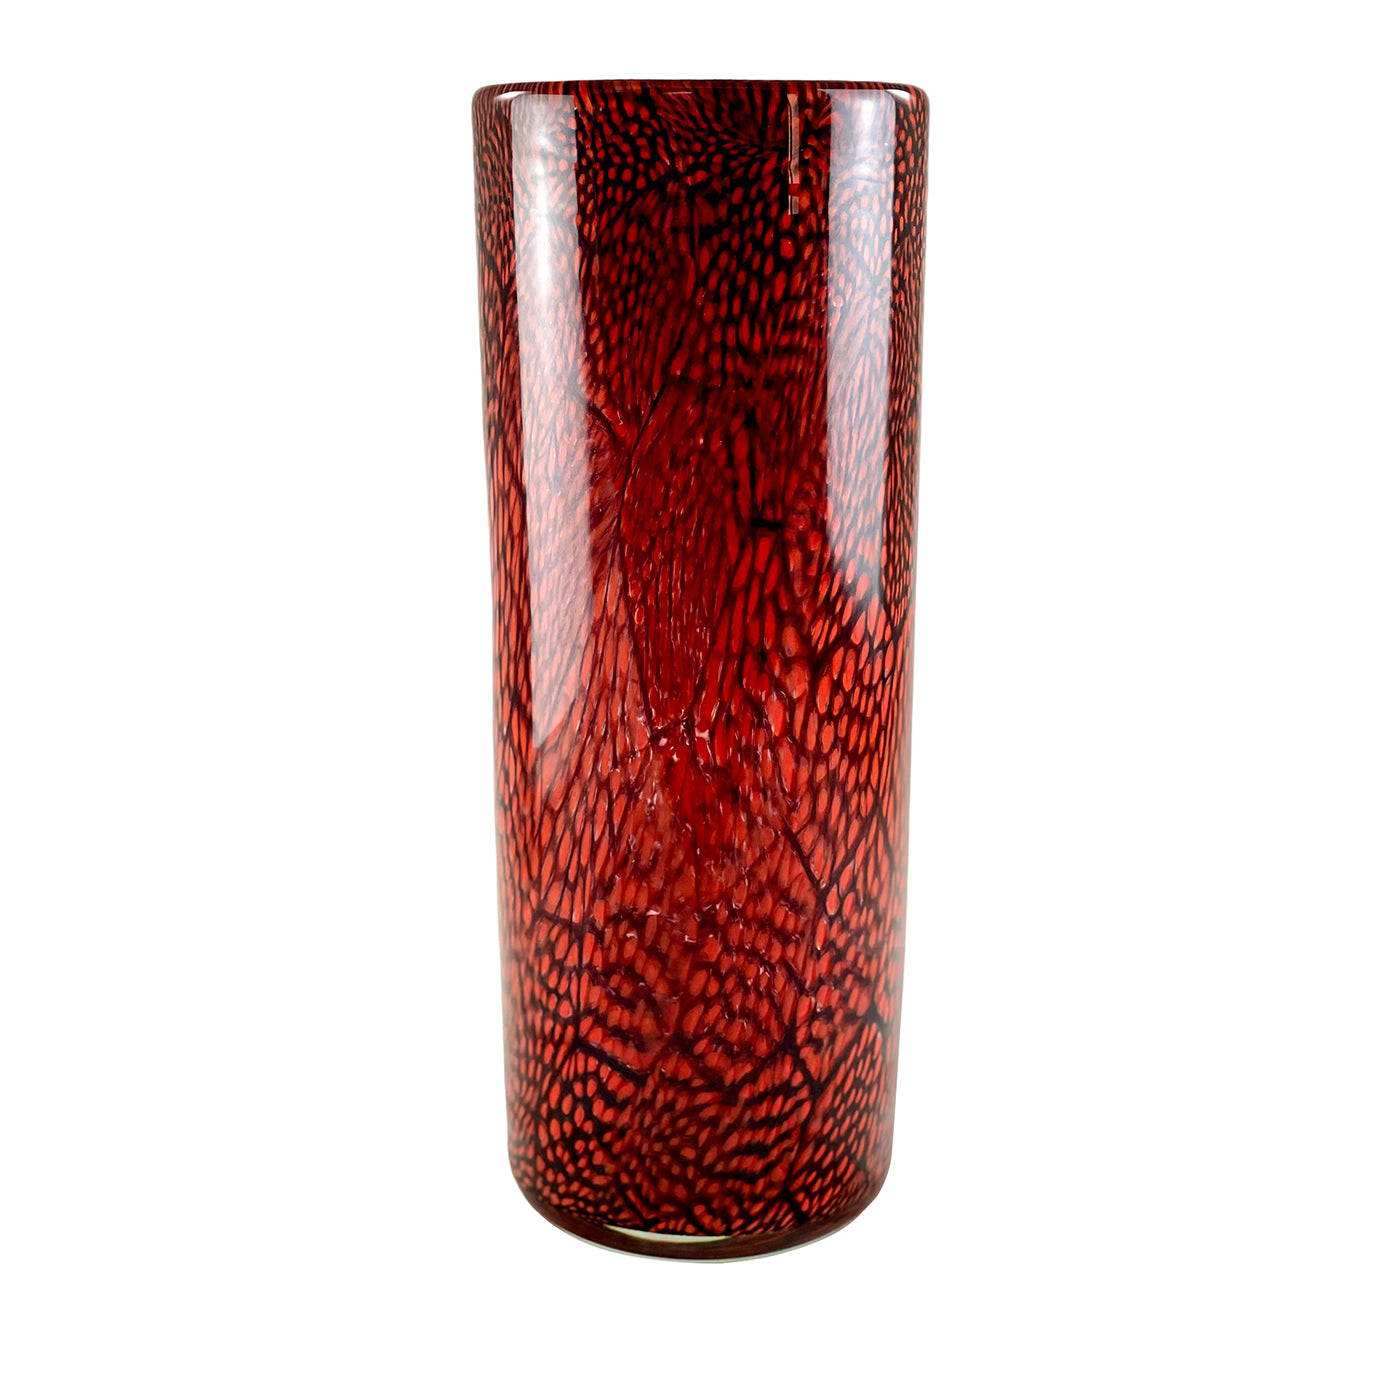 Red & White Filigree Murrine Vase - Main view